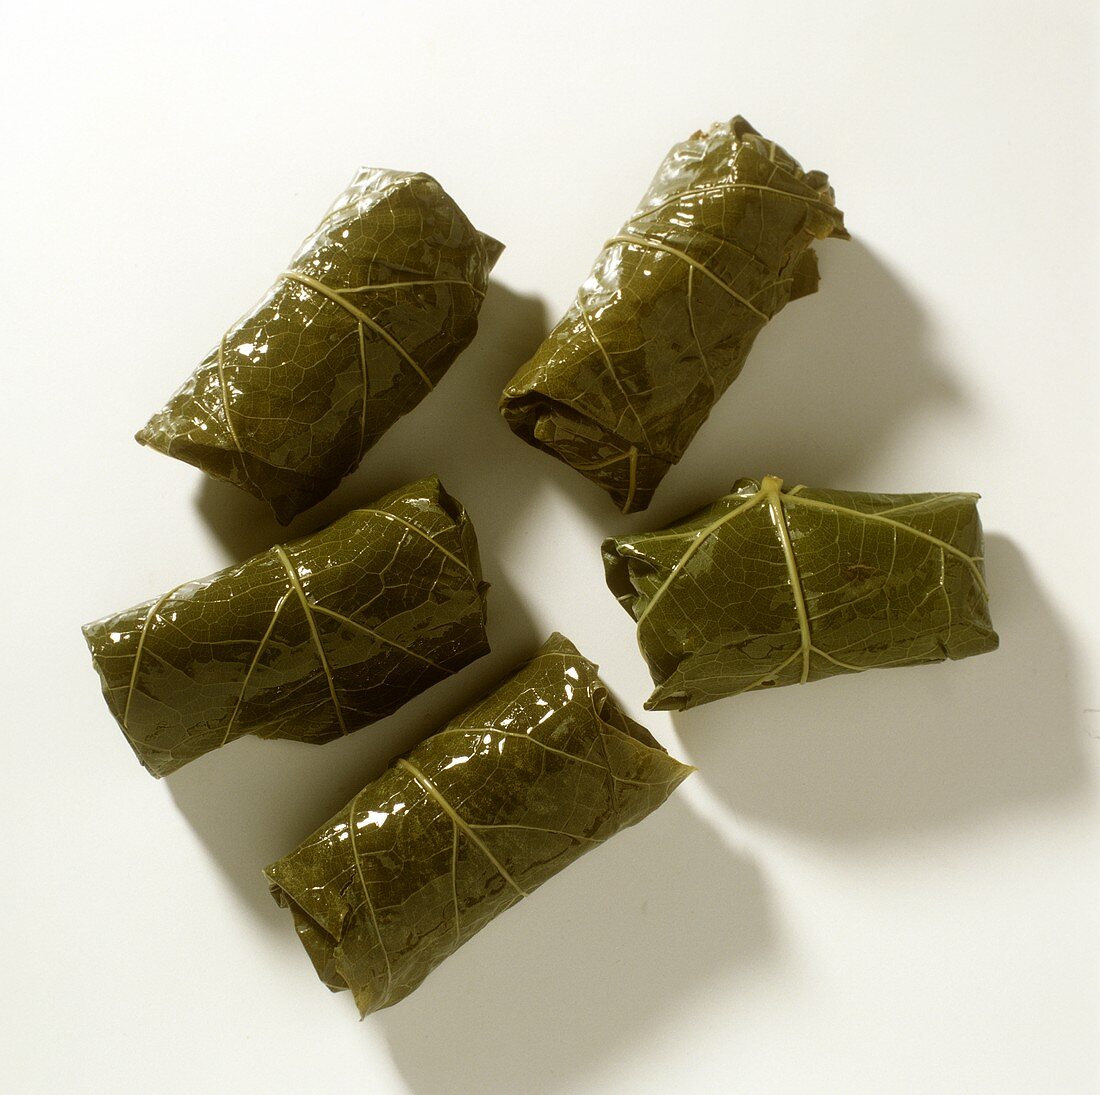 Five dolmades (stuffed vine leaves)